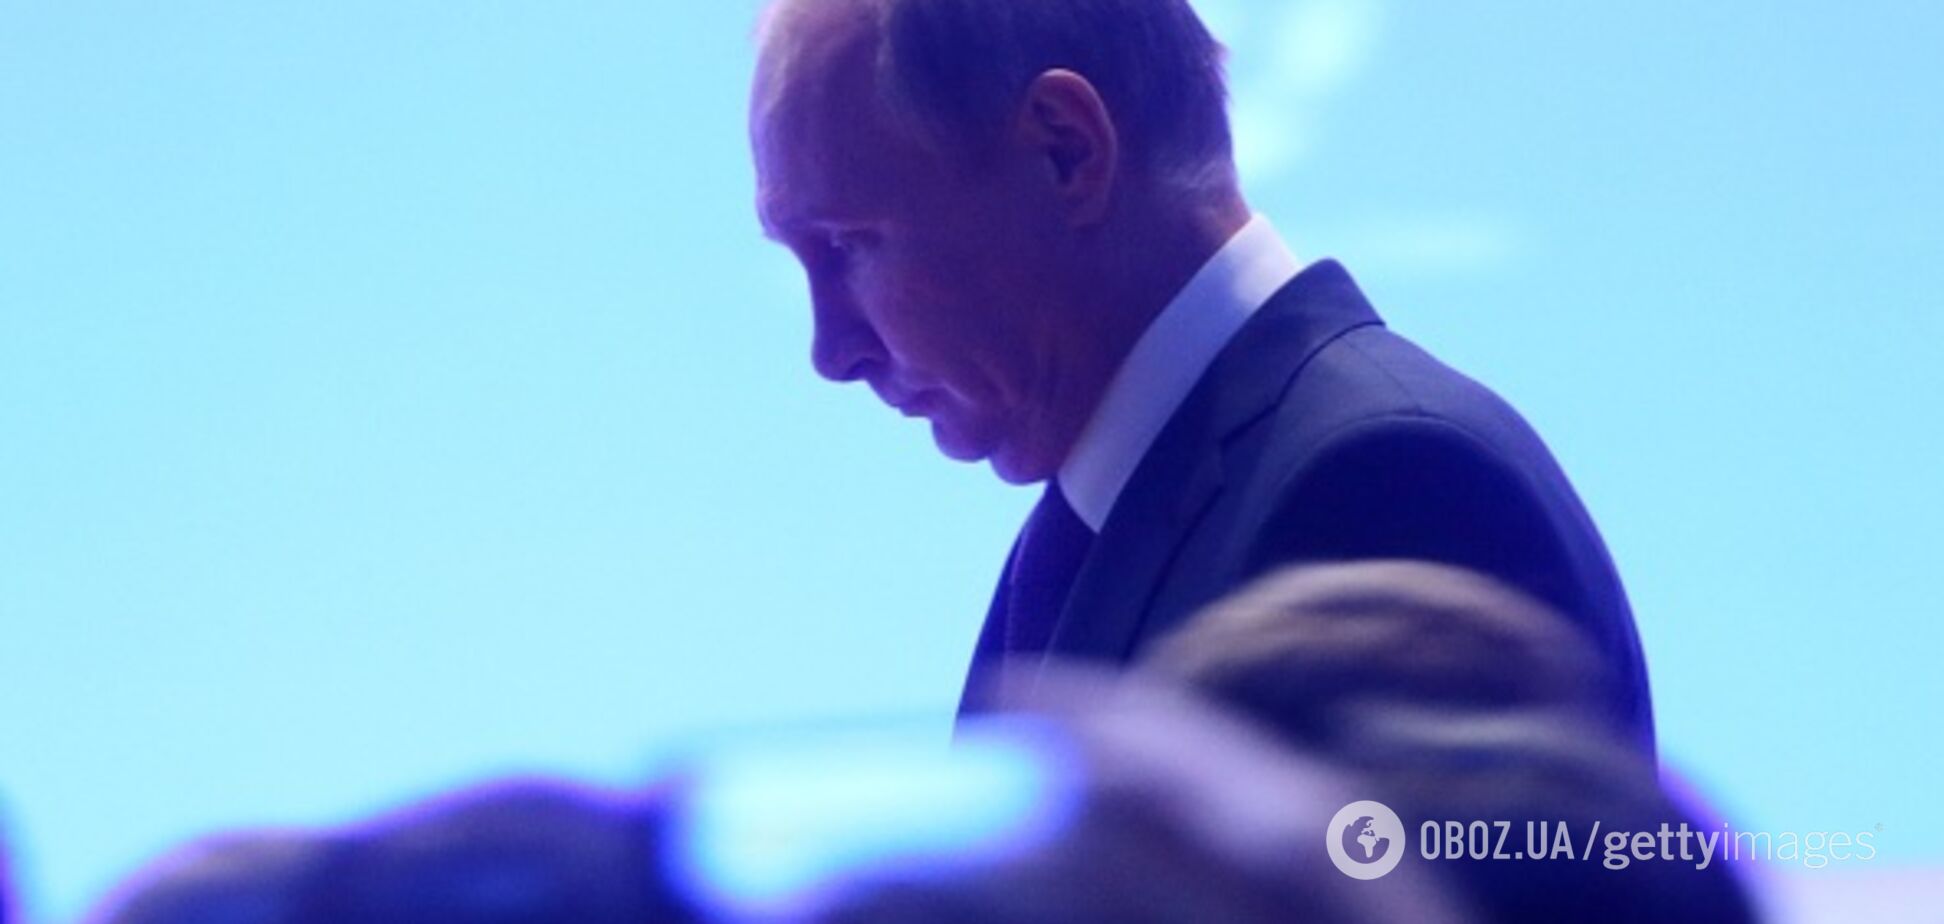 Смерть Путіна стане катастрофою для України: історик пояснив, чому